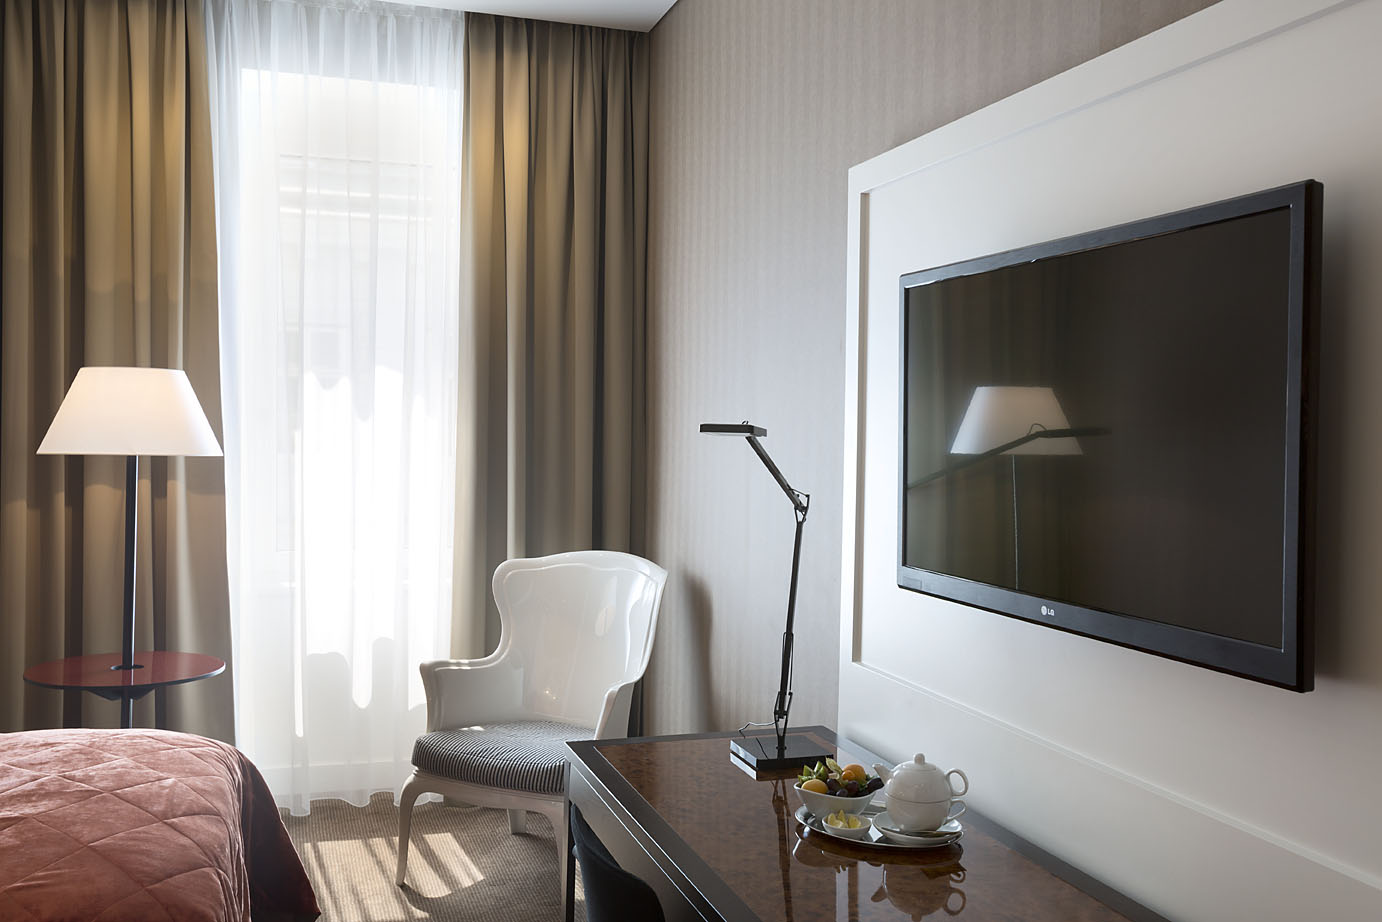 Doppelzimmer im Harmoniehotel mit Stehlampe, weißem Stuhl und großem Fernsehen